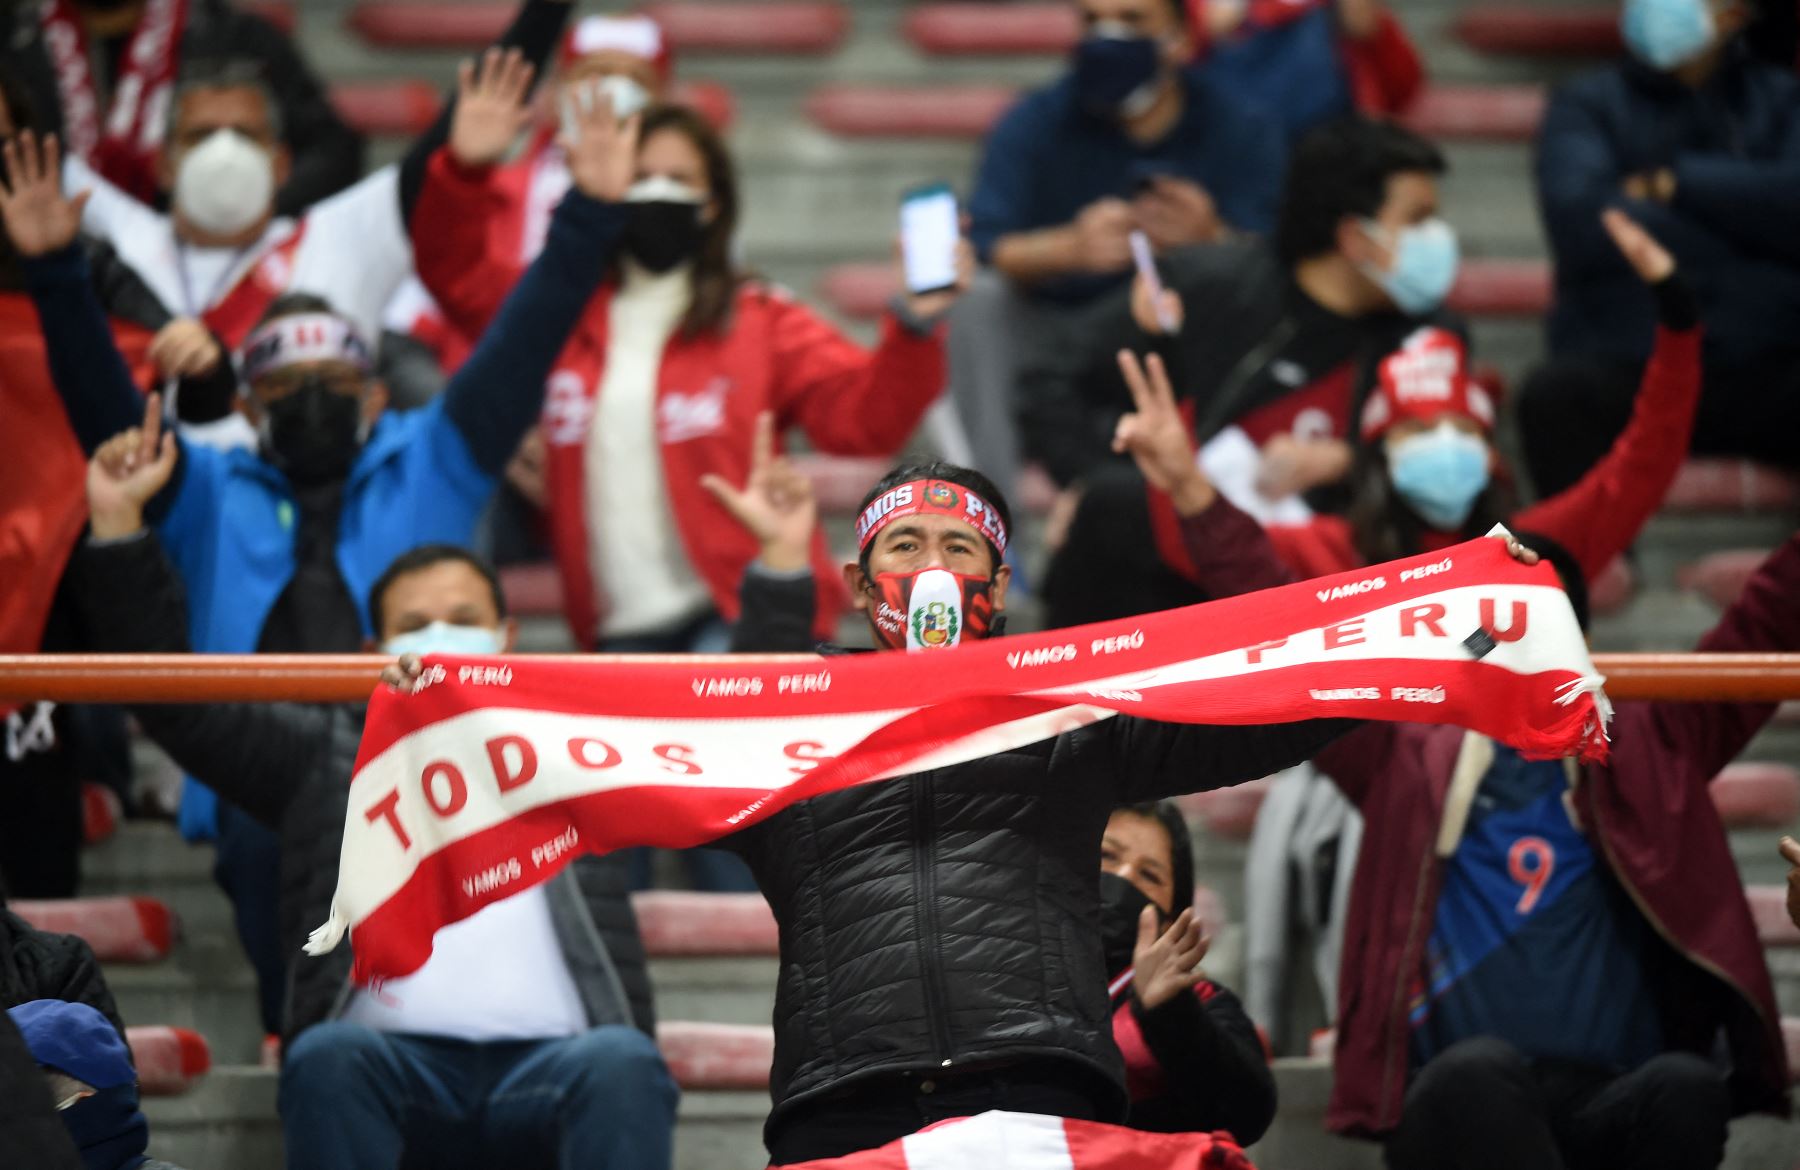 30% de hinchas podrían ir a alentar a la selección peruana en el estadio Nacional. Foto: AFP